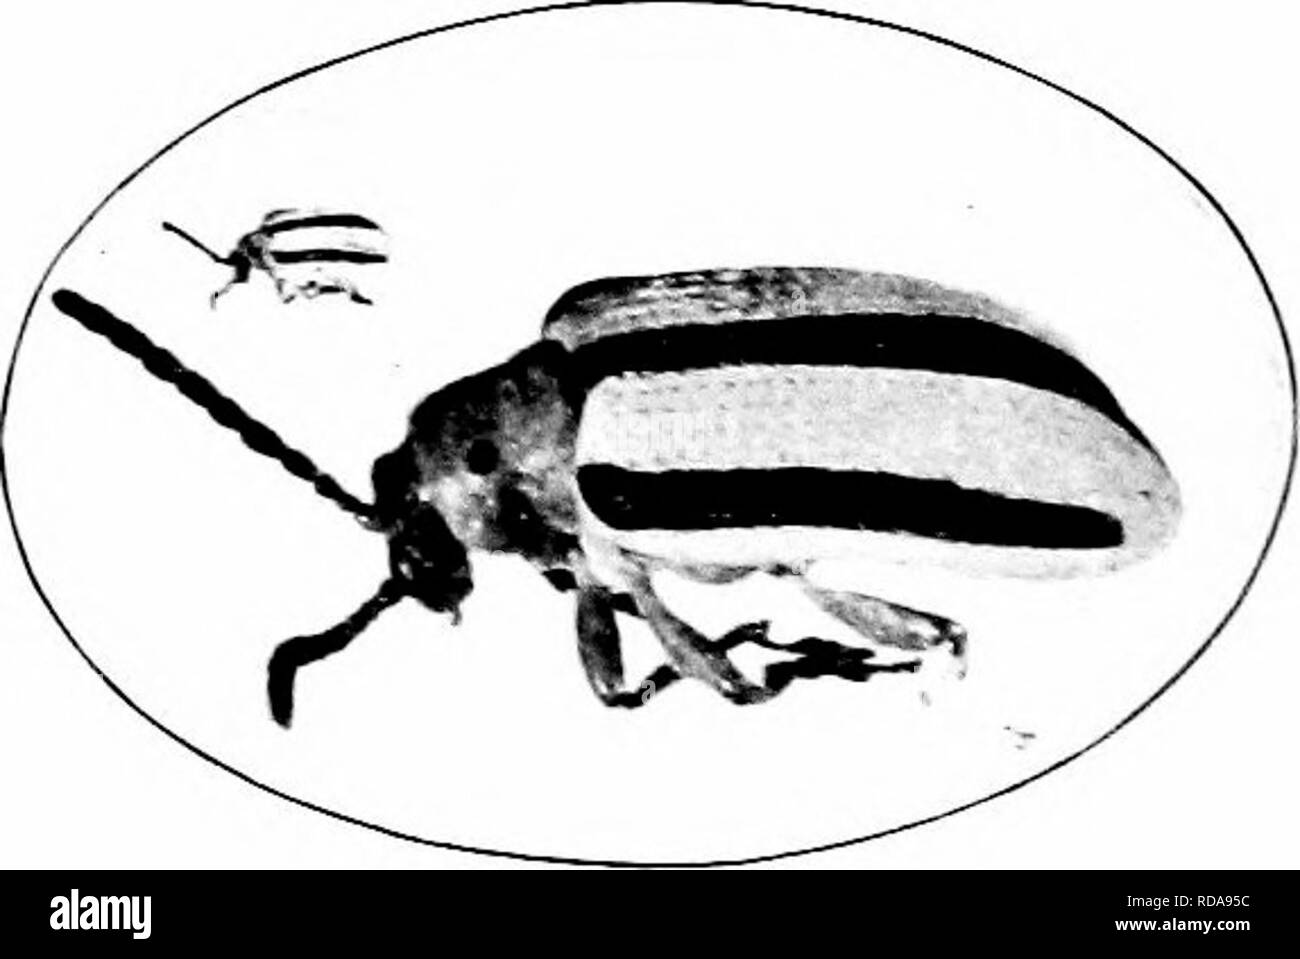 . Schädigende Insekten: Wie zu erkennen und zu steuern. Insekten und Schädlinge. Die drei - hned Kartoffel Käfer (Lema trilineaia Ohv.) Schädigung durch tliis Arten ist ungefähr das Gleiche wie das getan liy der Colorado potato-l:&gt; eetle. Die Eier sind entlang der Mittelrippe der Blätter gelegt. Die Larve deckt sich mit einer Masse von excre- ment. Der Erwachsene ist eine Hand - einige Käfer, seinen Körper gestreift mit hellen Gelb und Schwarz. T.1^,. ,. 1 1-f "Ich &Lt;^ - 1 - ^5. Die drei - Kartoffel der Länge 1 $ ein litt e mehr als-R, ori-r i i j Â" i - "Käfer gesäumt. Vergrößert und natürliche Größe. eine tlurd Zoll. Es Stockfoto